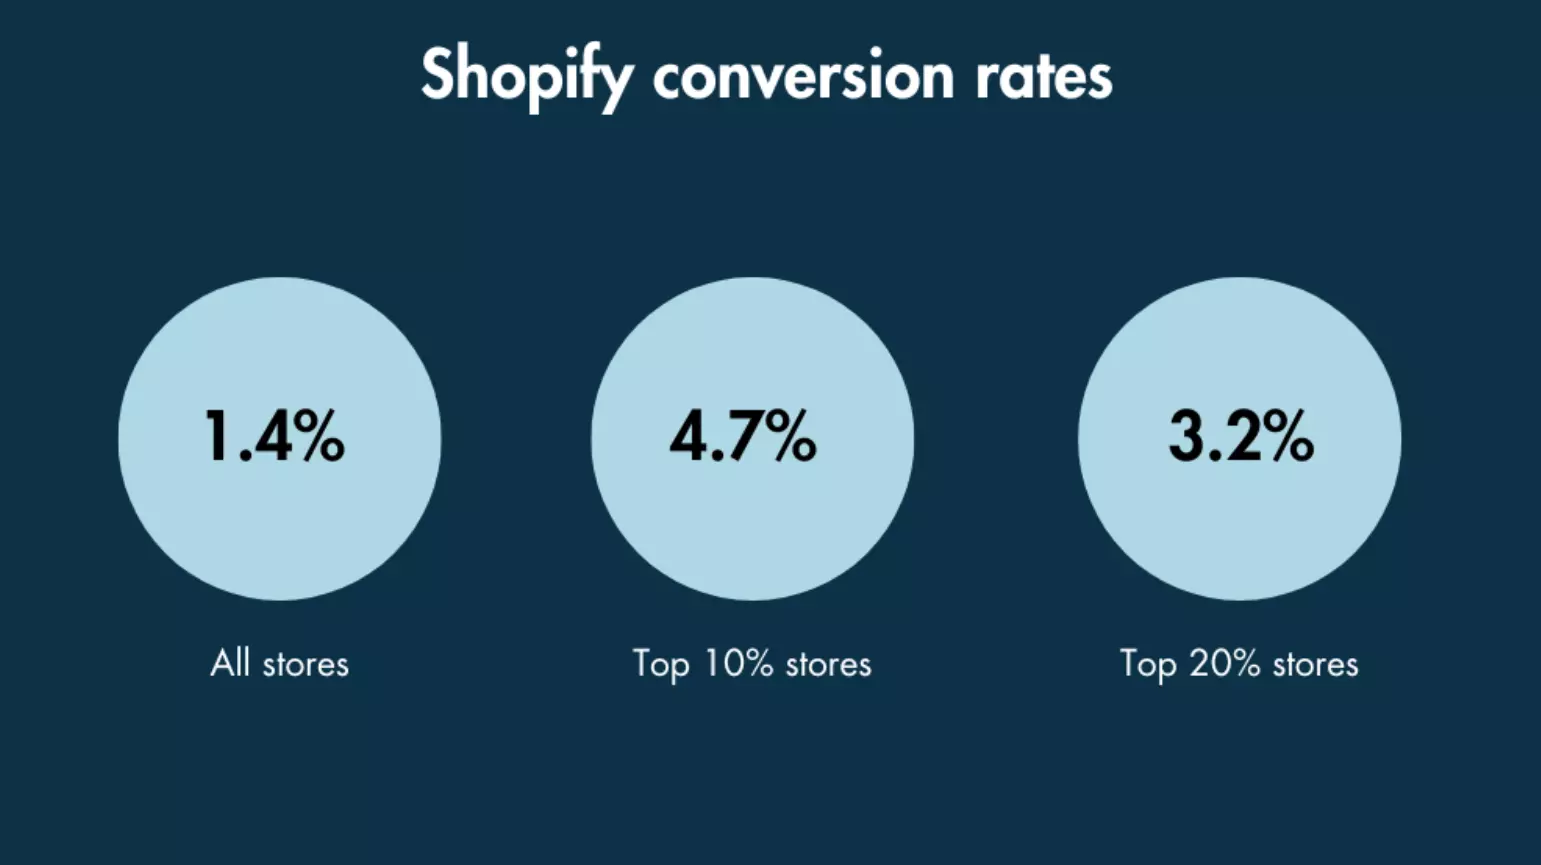 Tỷ lệ chuyển đổi của cửa hàng trực tuyến Shopify là bao nhiêu